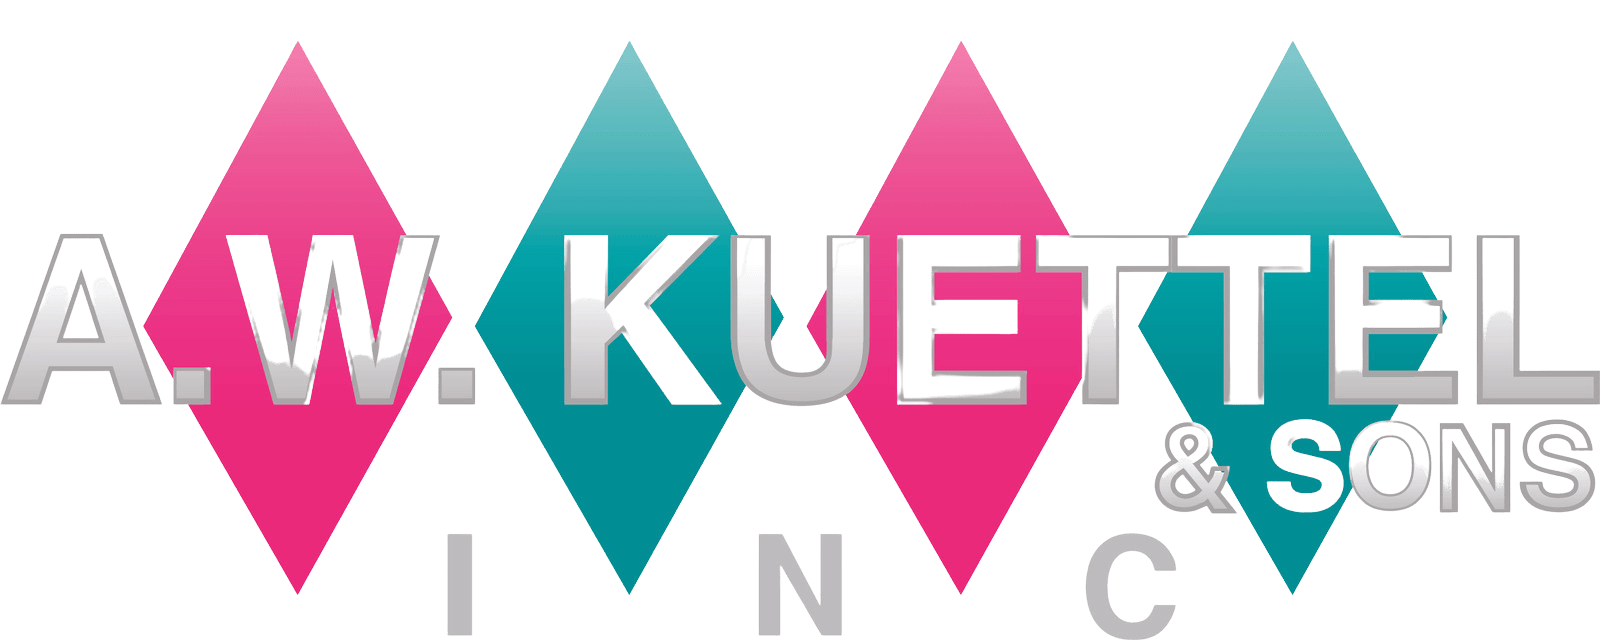 KuettelLogo - Edited